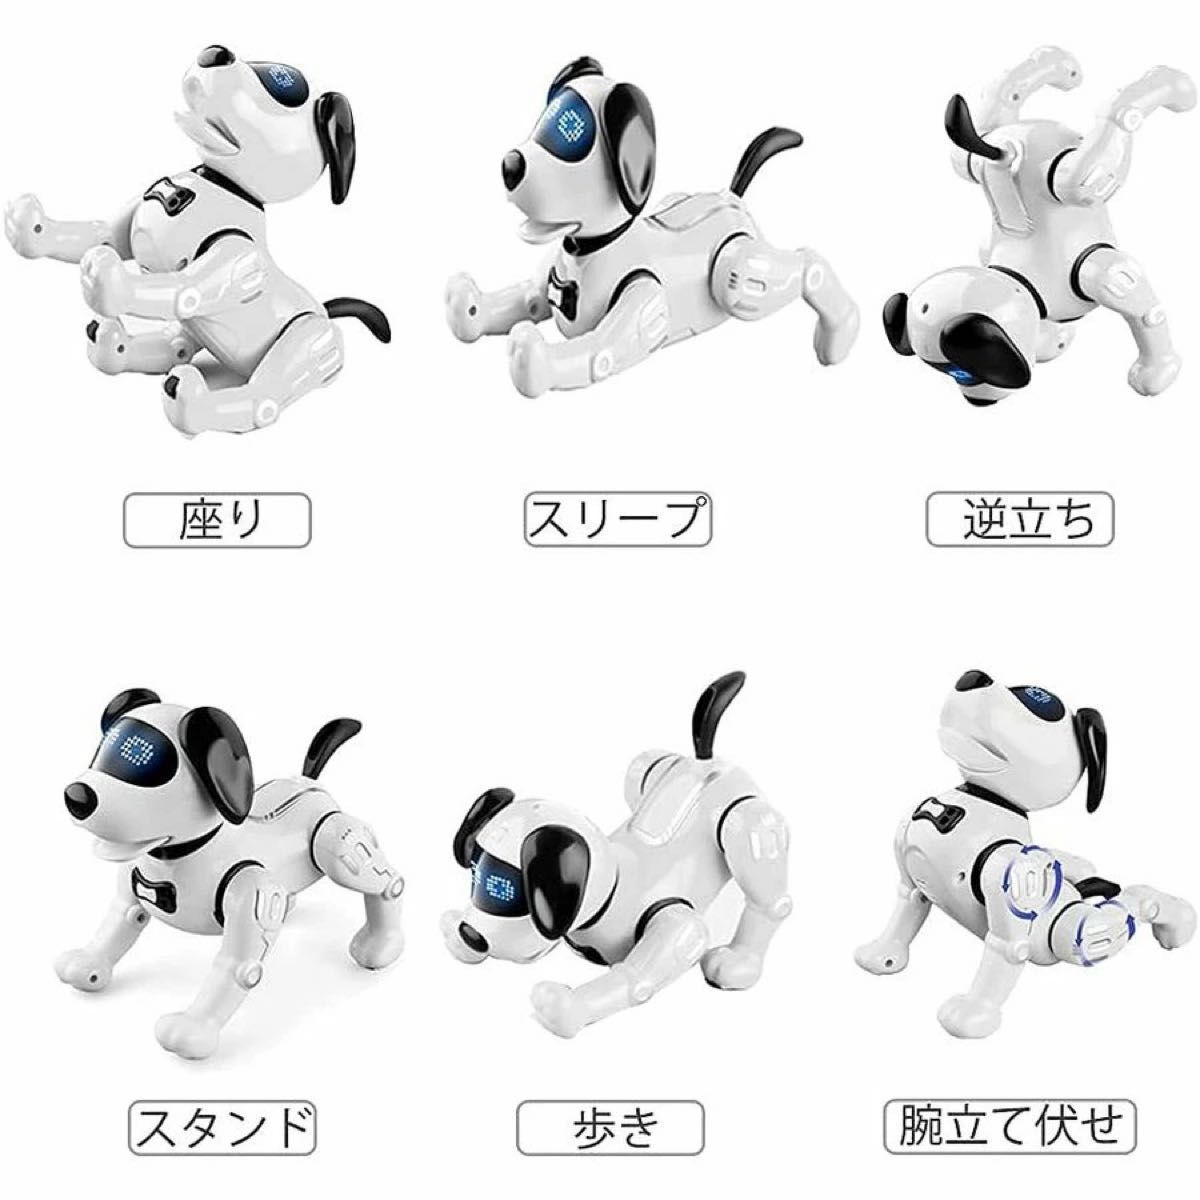 ロボット犬 おもちゃ 犬型ロボット 電子ペット 男の子おもちゃ 女の子おもちゃ 子供おもちゃ ペットロボット 誕生日 子供の日 